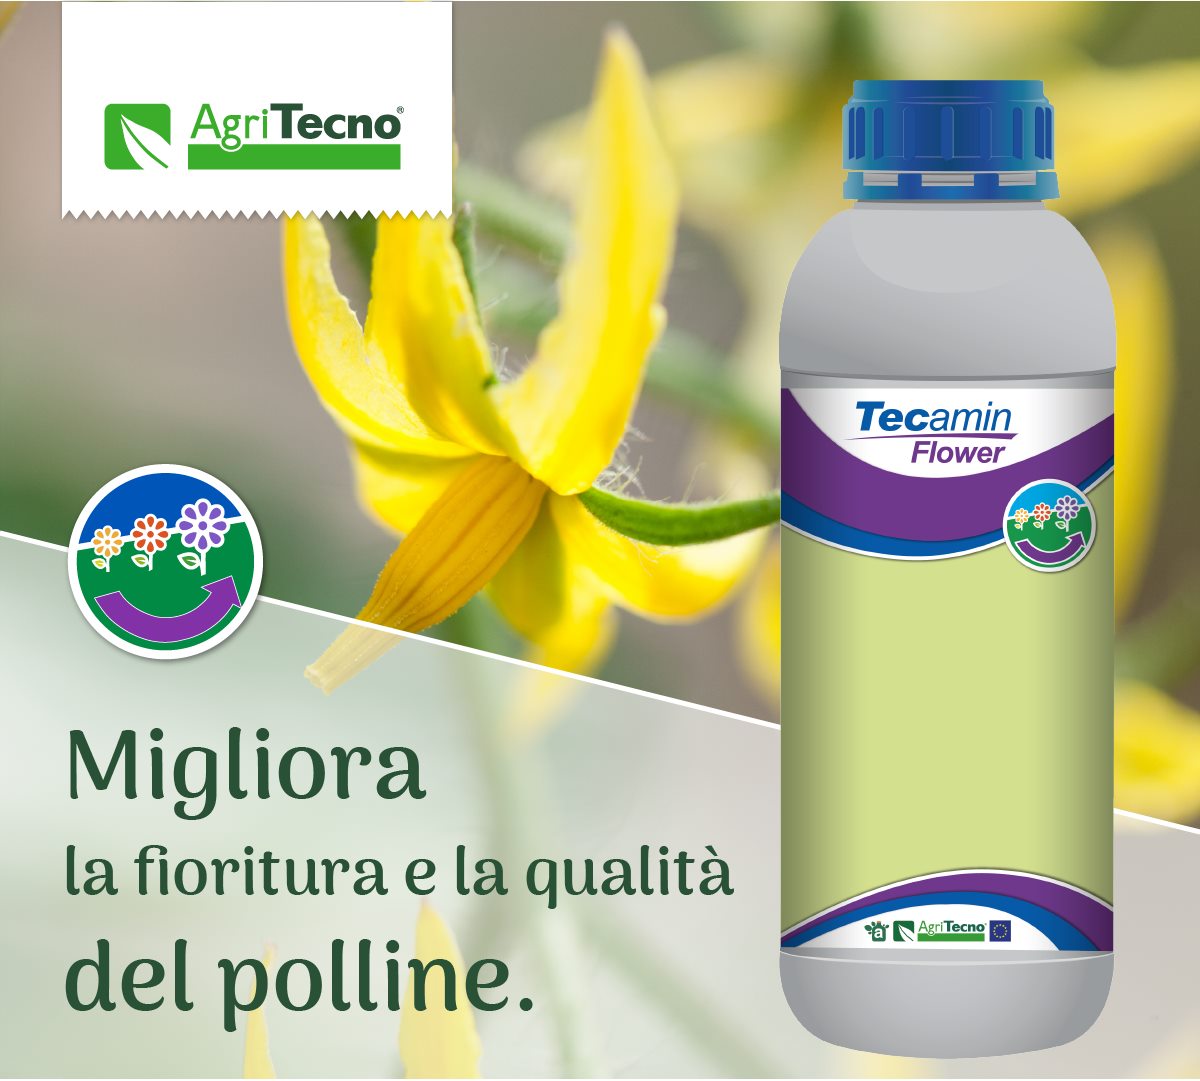 Migliora la fioritura e la qualità del polline
 Prova il nostro Tecamin Flower



Mejora la floración y la calidad del polen
 Prueba nuestro Tecamin Flower
Traducido del Italiano